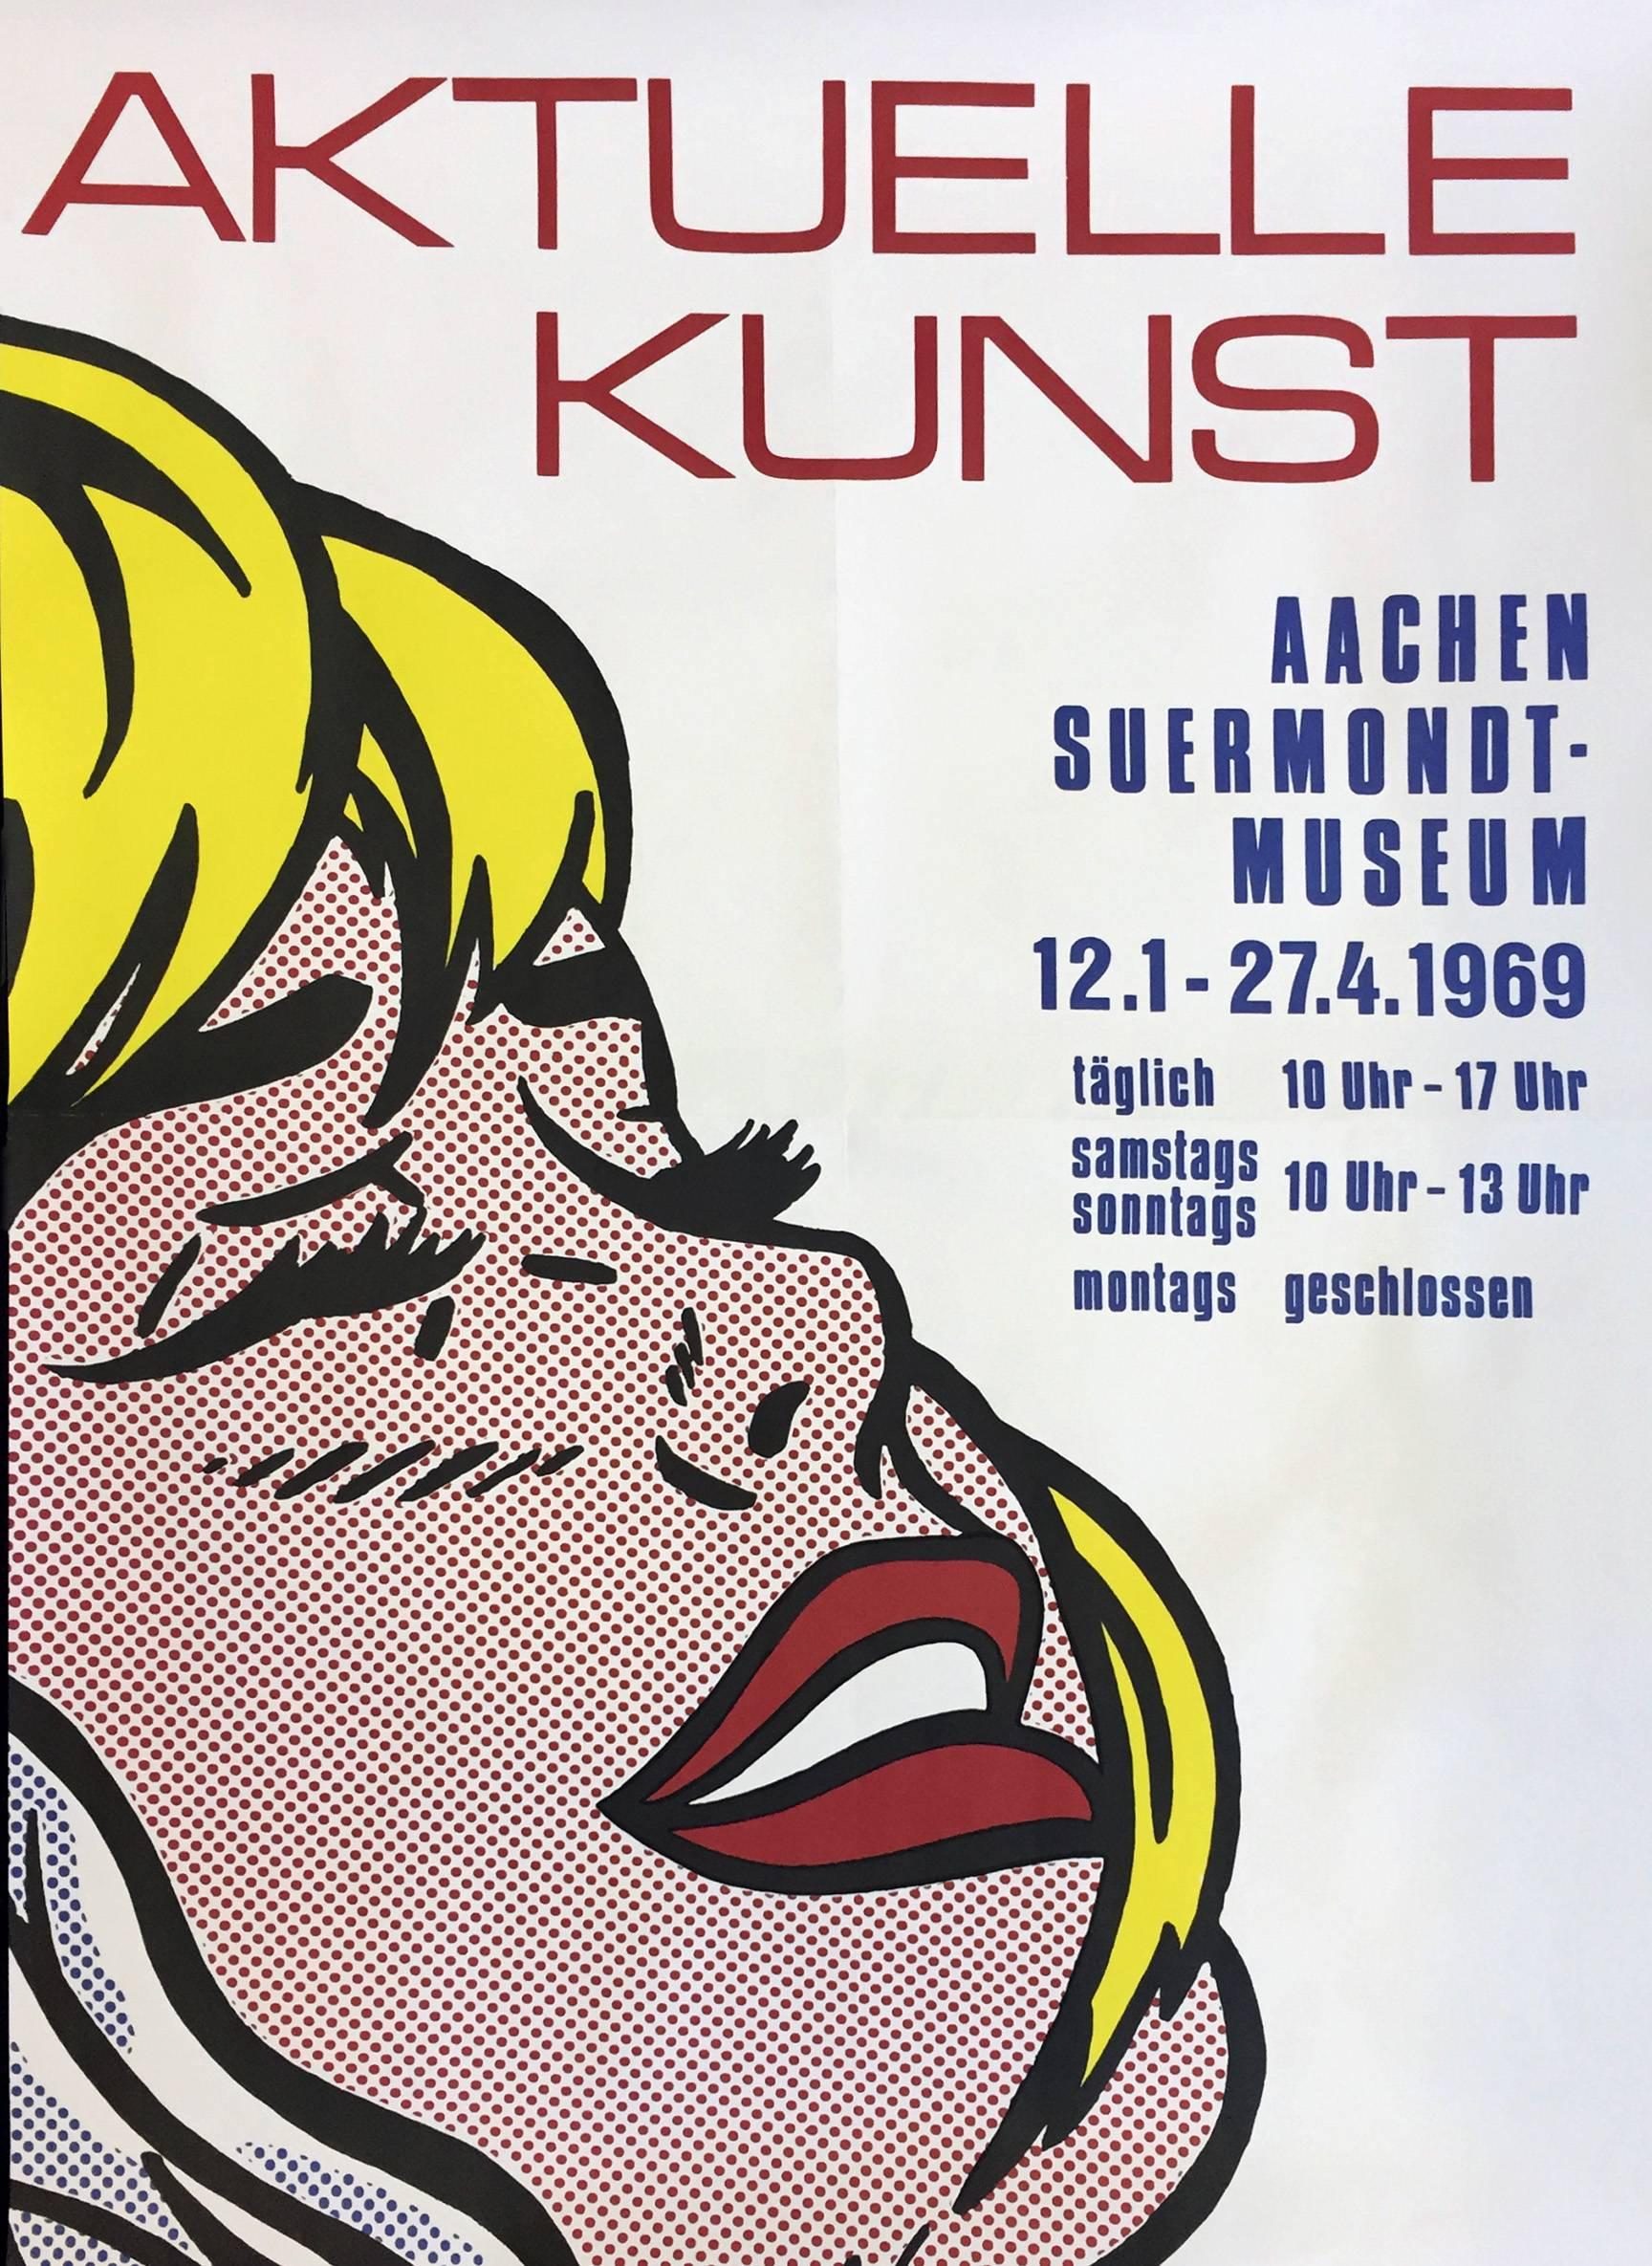 Vintage Roy Lichtenstein Exhibition Poster (Shipboard Girl) - Print by (after) Roy Lichtenstein